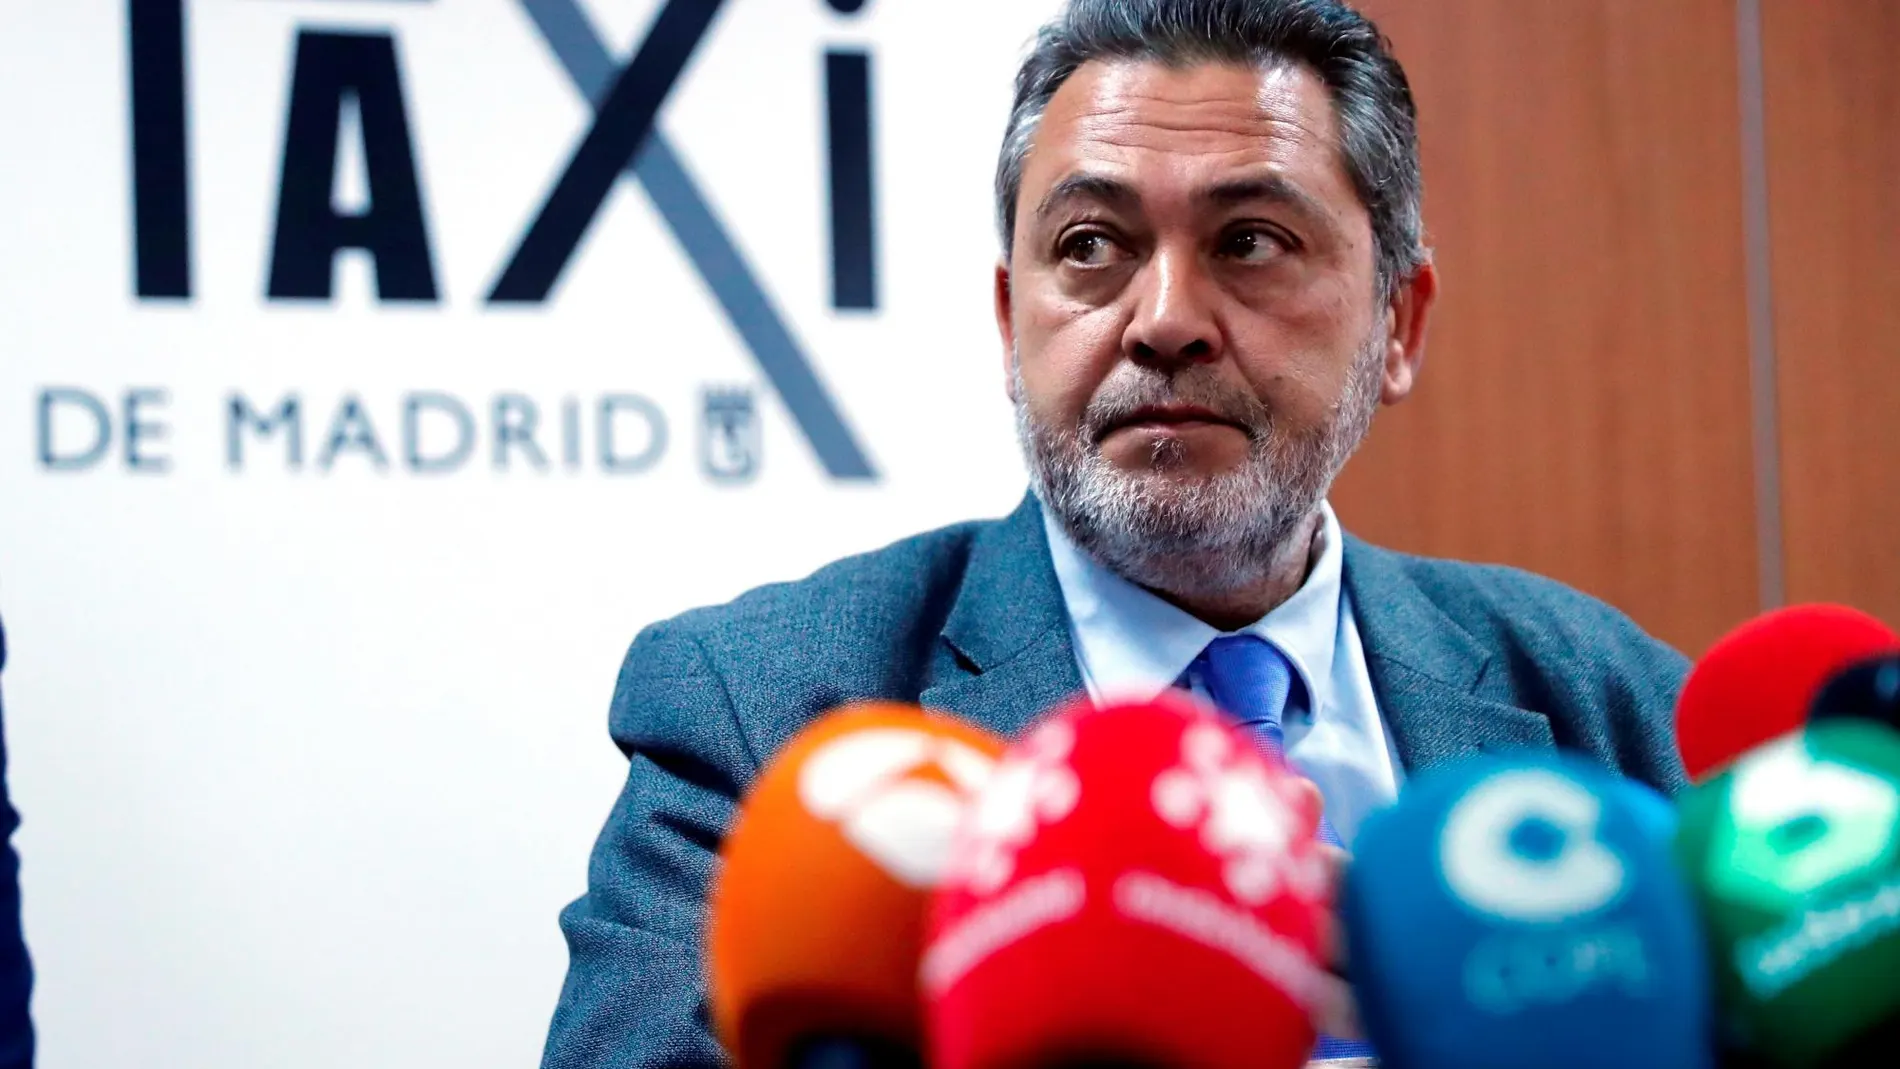 El portavoz de la Federación Profesional del Taxi de Madrid, Julio Sanz, durante la rueda de prensa para informar sobre el documento presentado a la Comunidad de Madrid